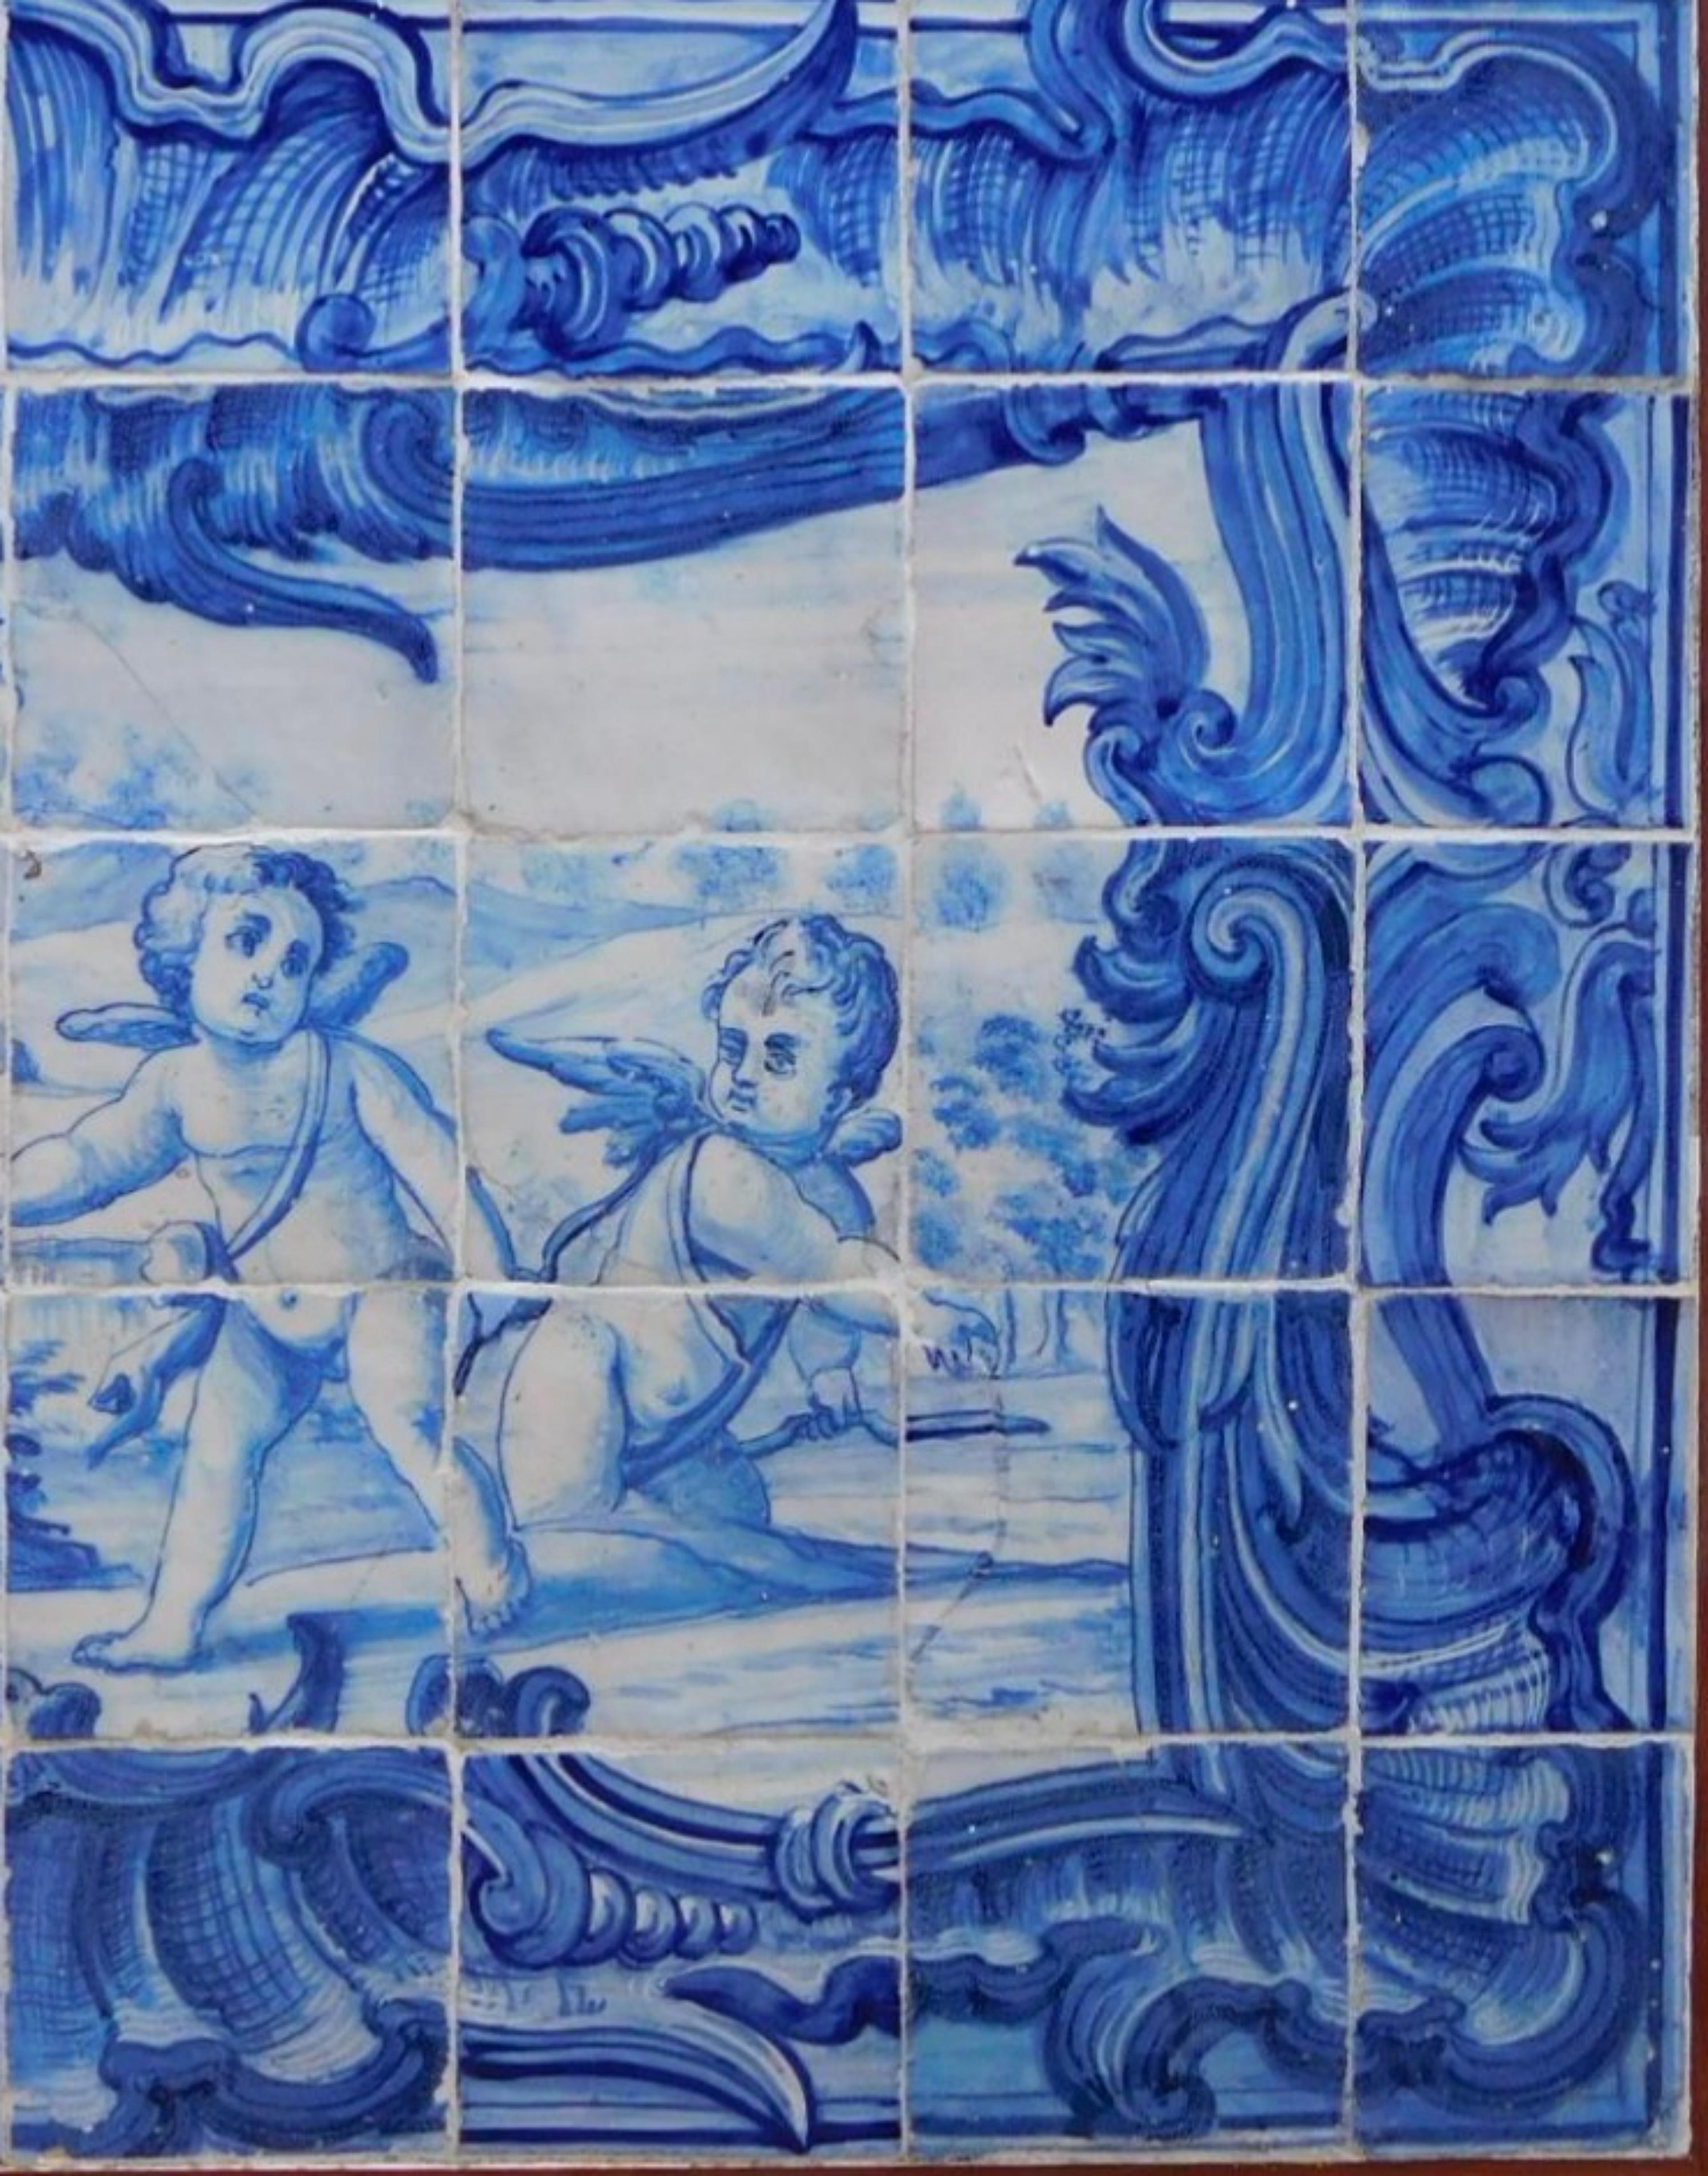 Portugiesische Kacheltafel aus dem 18. Jahrhundert „Engel beim Spielen“
1.09 x 0.72m
40 Fliesen
gute Bedingungen